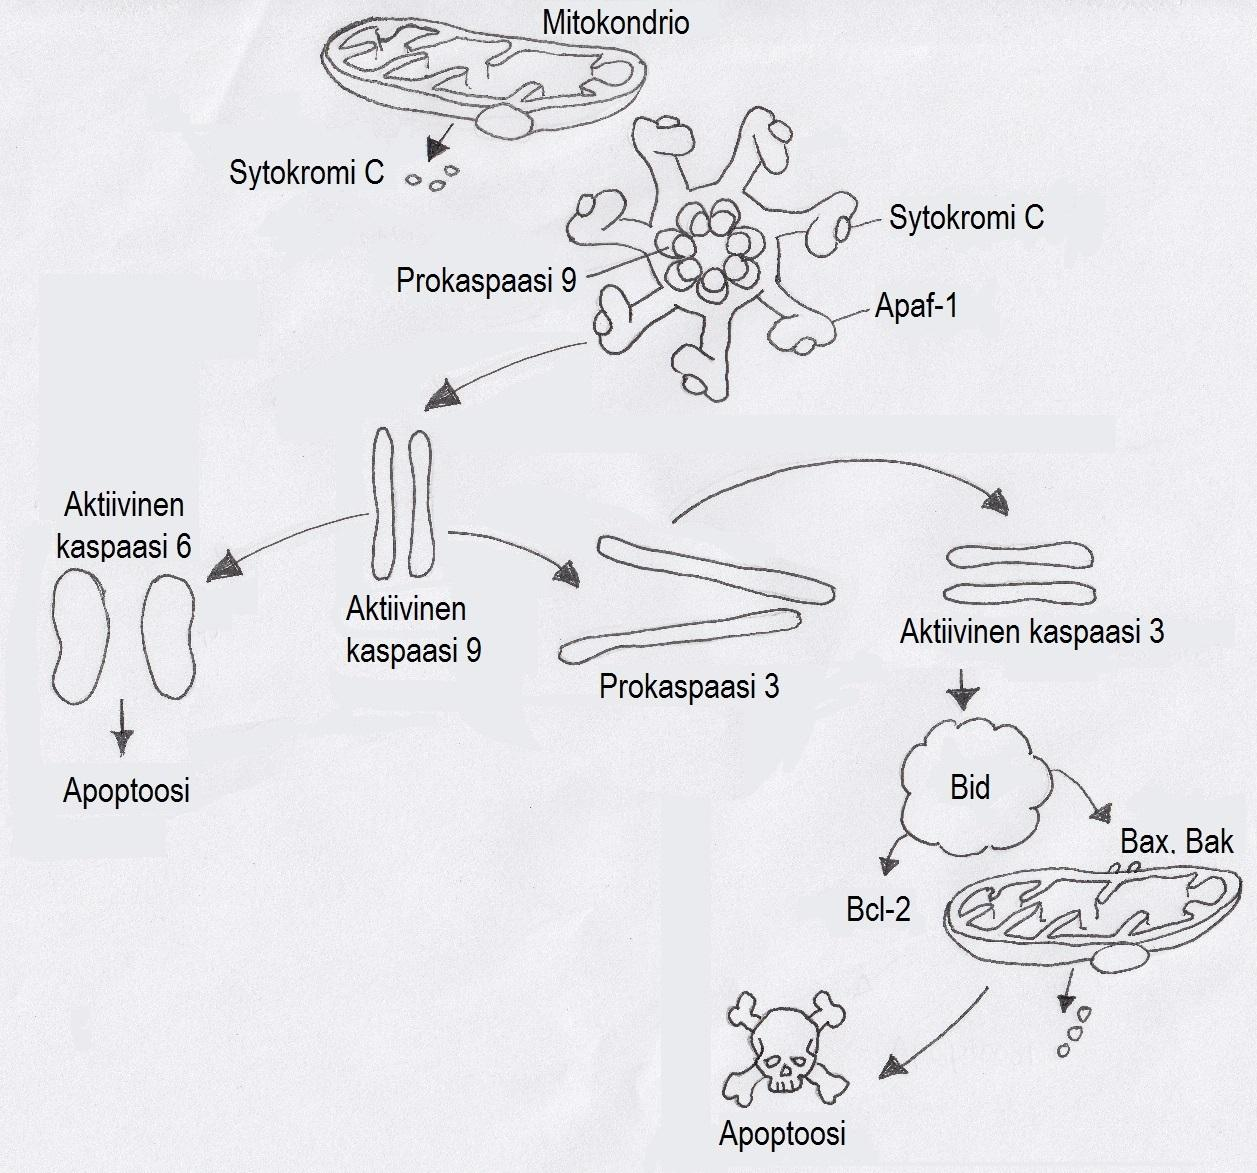 Bax, Bak, Bad sekä Bcl-2-proteiinit kuuluvat kaikki samaan proteiiniperheeseen. Näistä Bak, Bax ja Bad edistävät apoptoosia, kun taas Bcl-2-proteiini estää sitä.